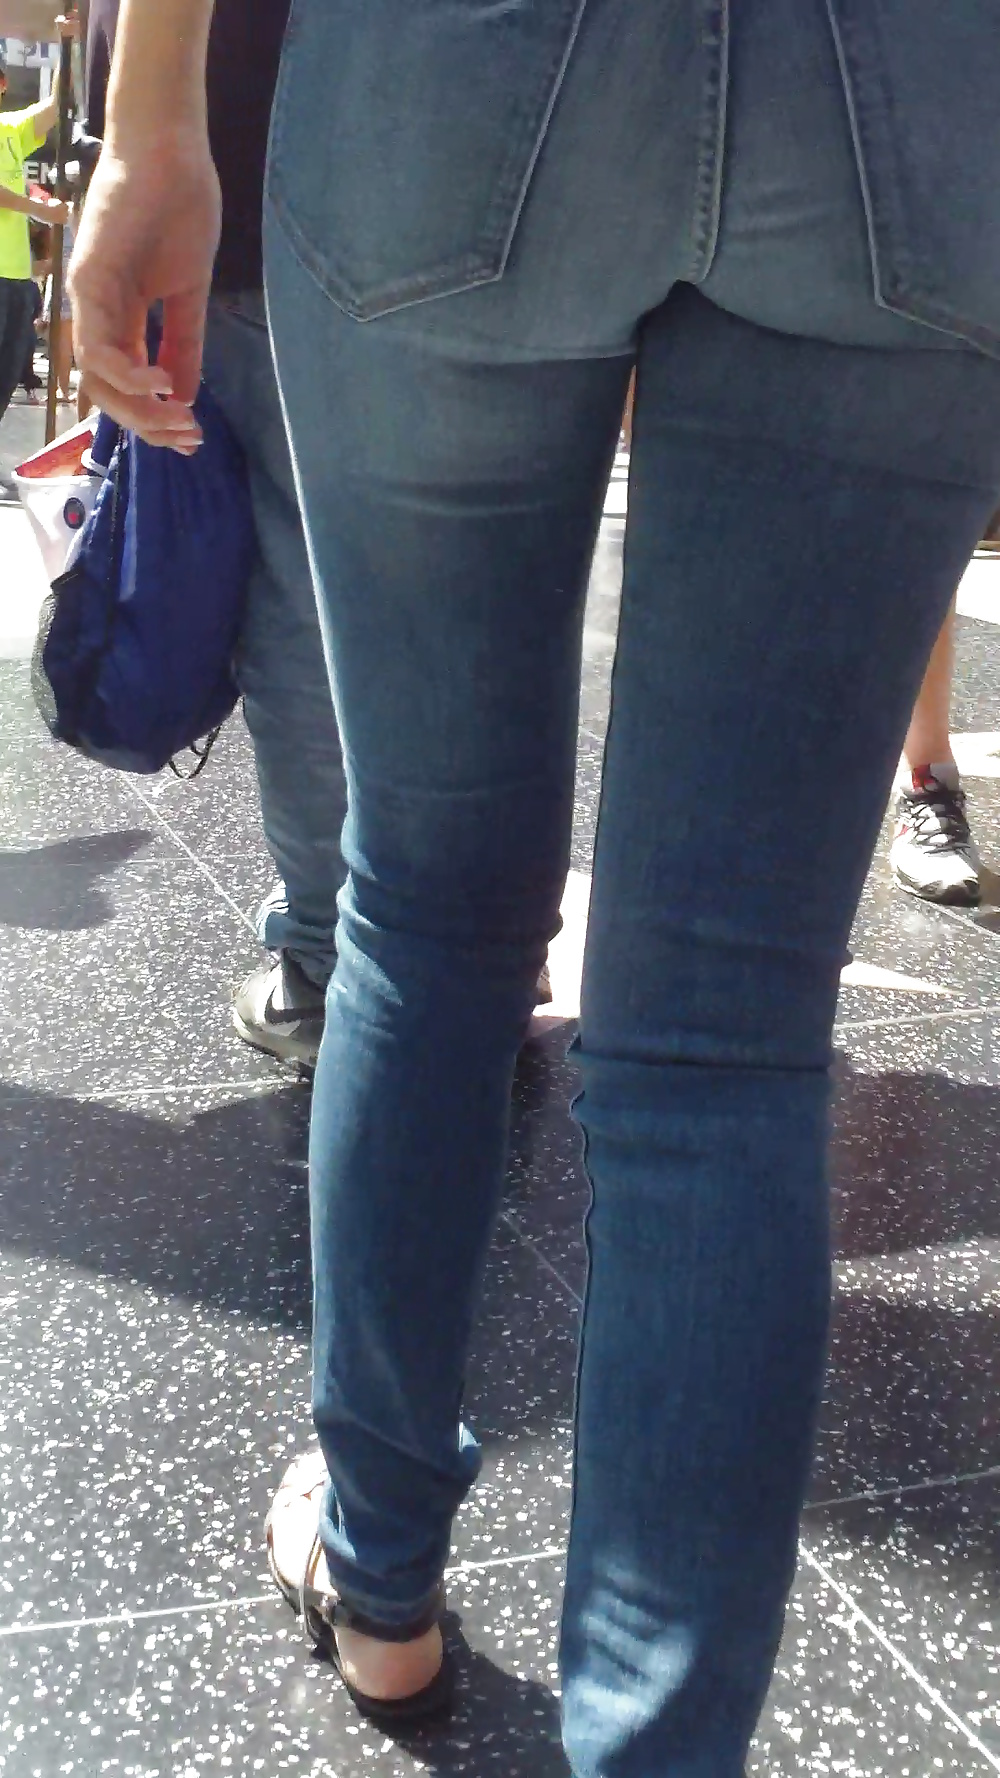 Popular teen girls ass & butt in jeans Part 5 #28735700